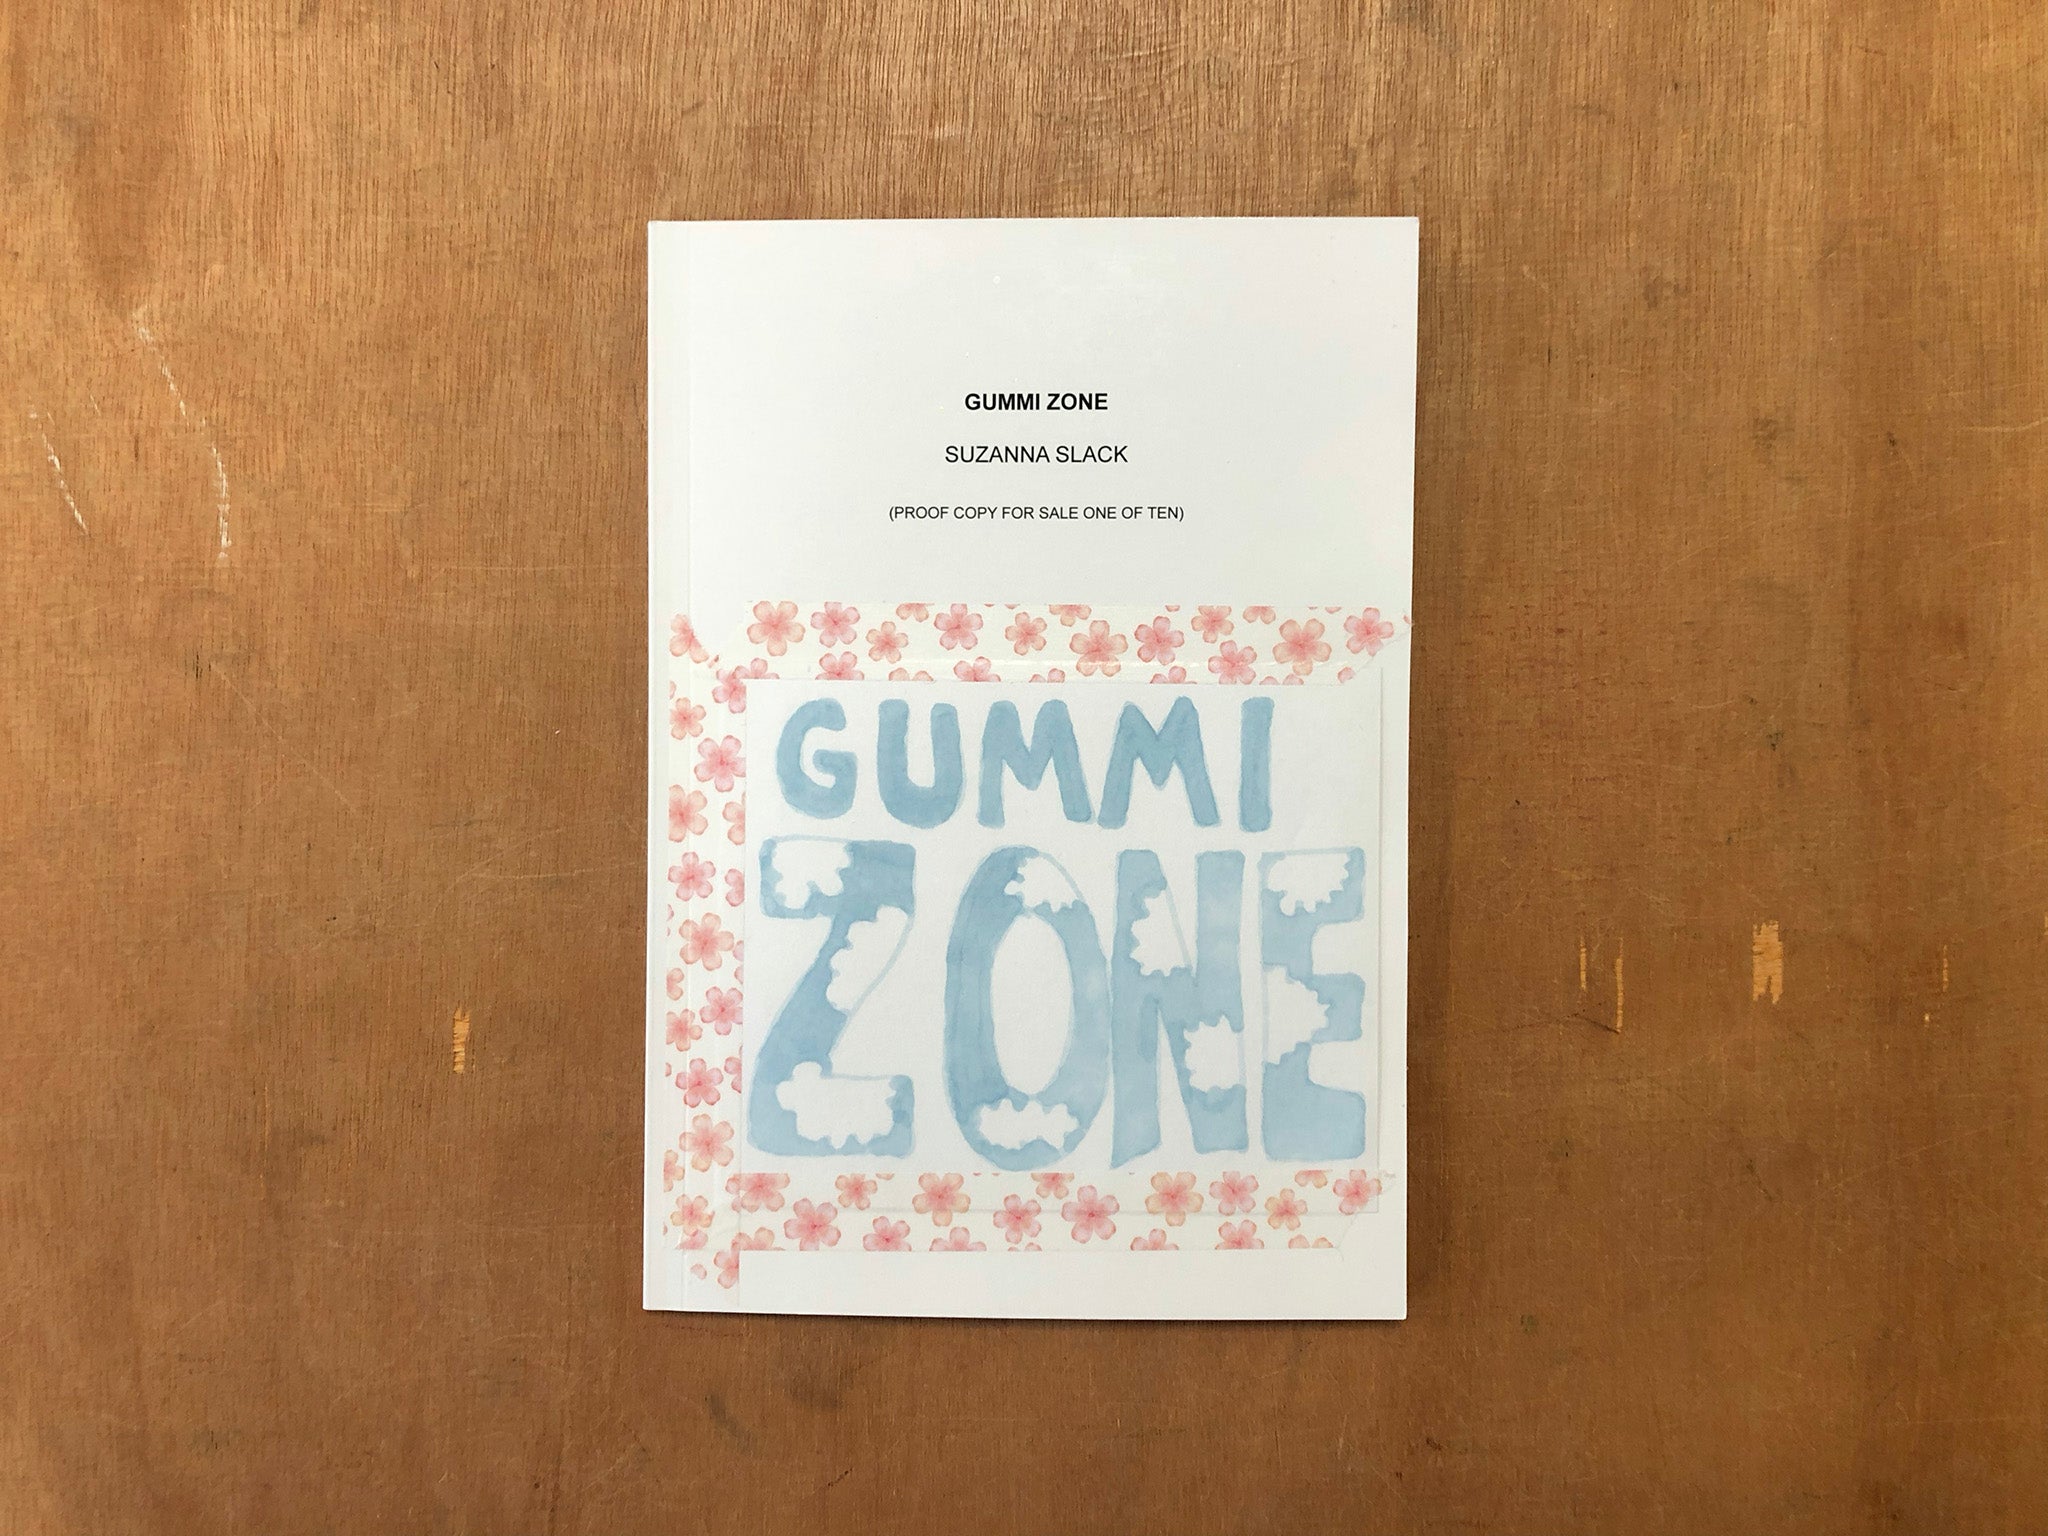 GUMMI ZONE by Suzanna Slack